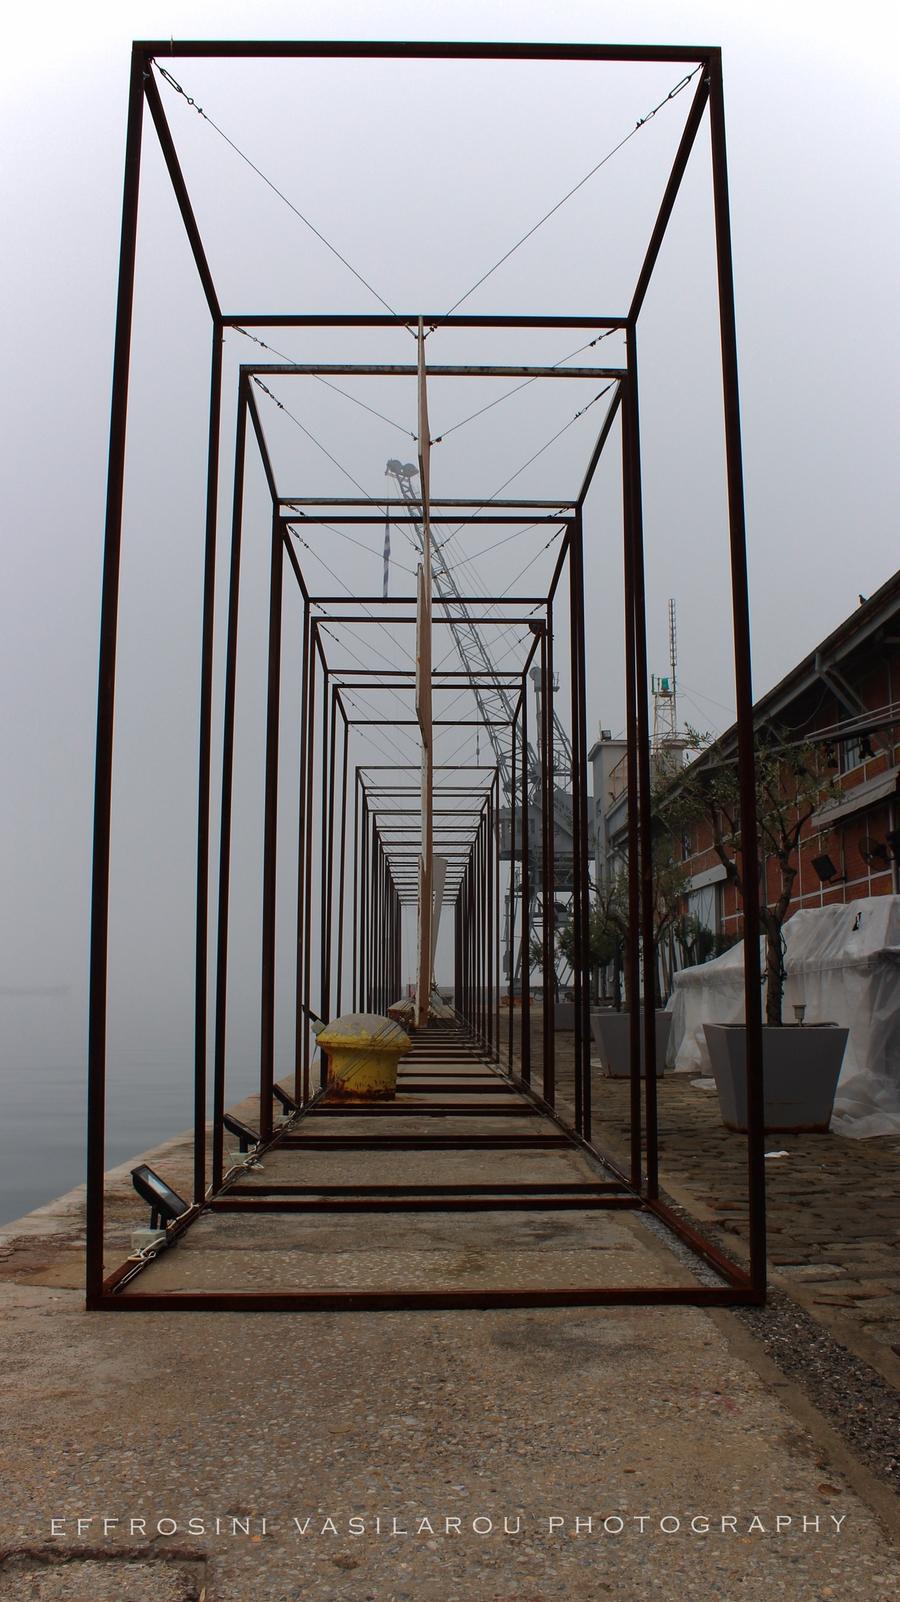 Το Λιμάνι της Θεσσαλονίκης στην ομίχλη, από την Ευφροσύνη Βασίλαρου